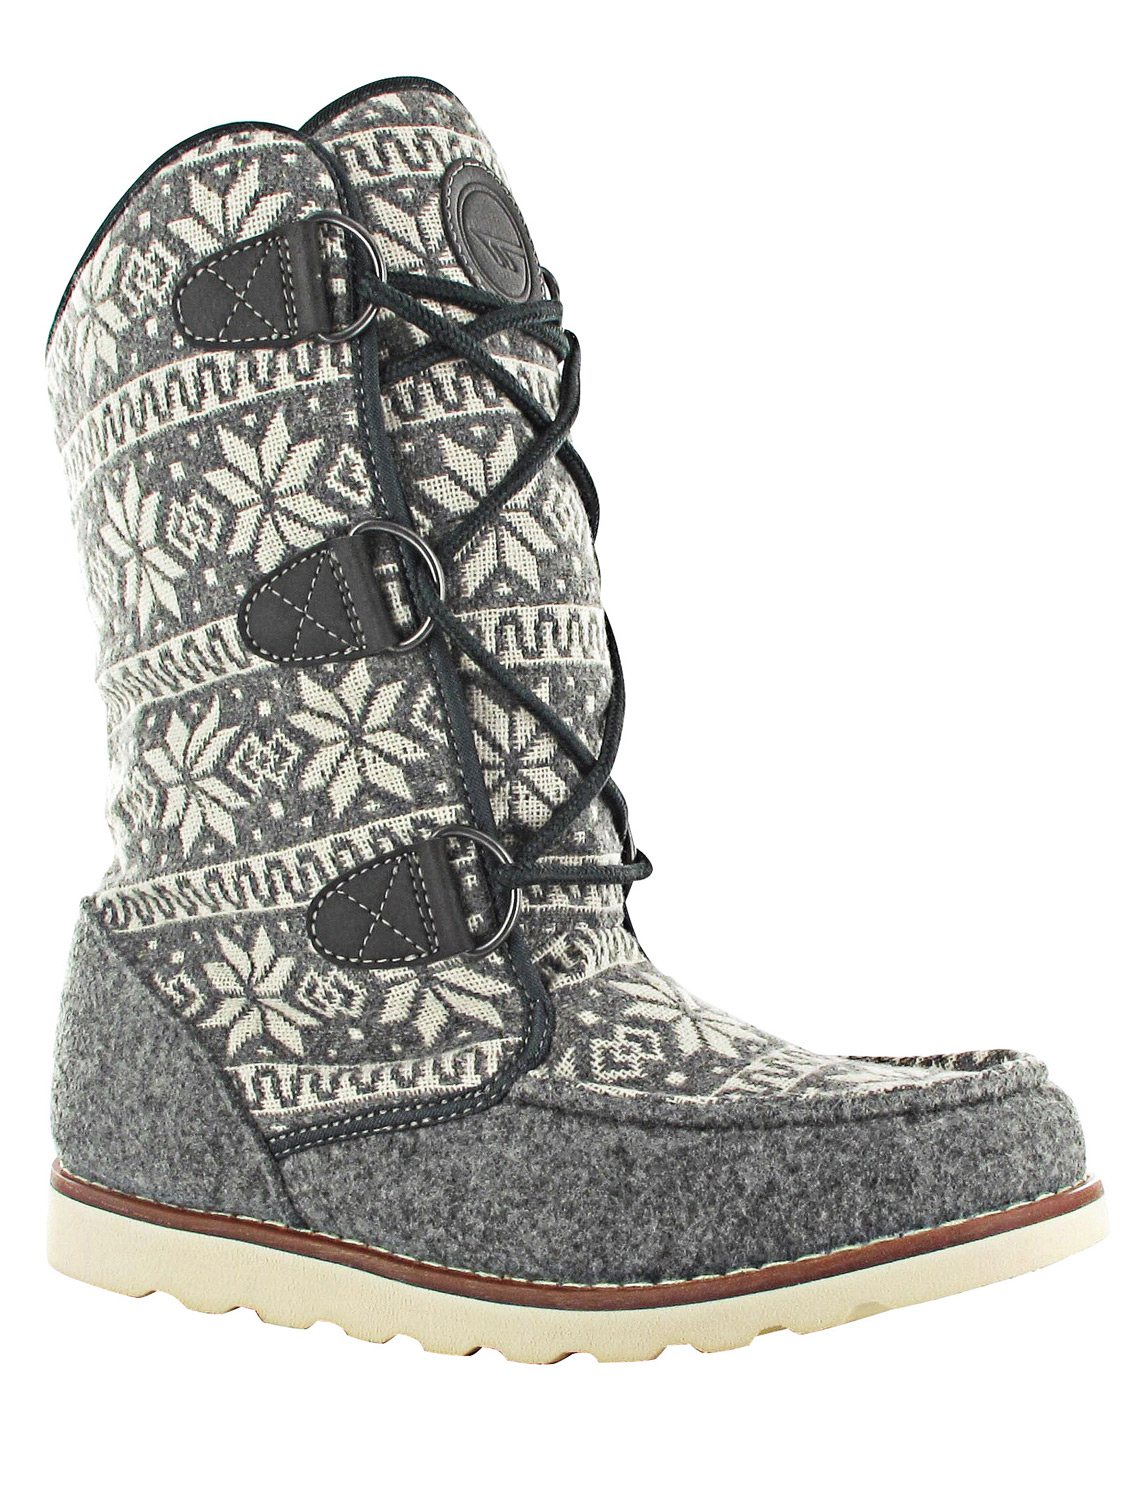 Hi-tec Concession Womens Thomas Boot 200 I Grey - Size: 5